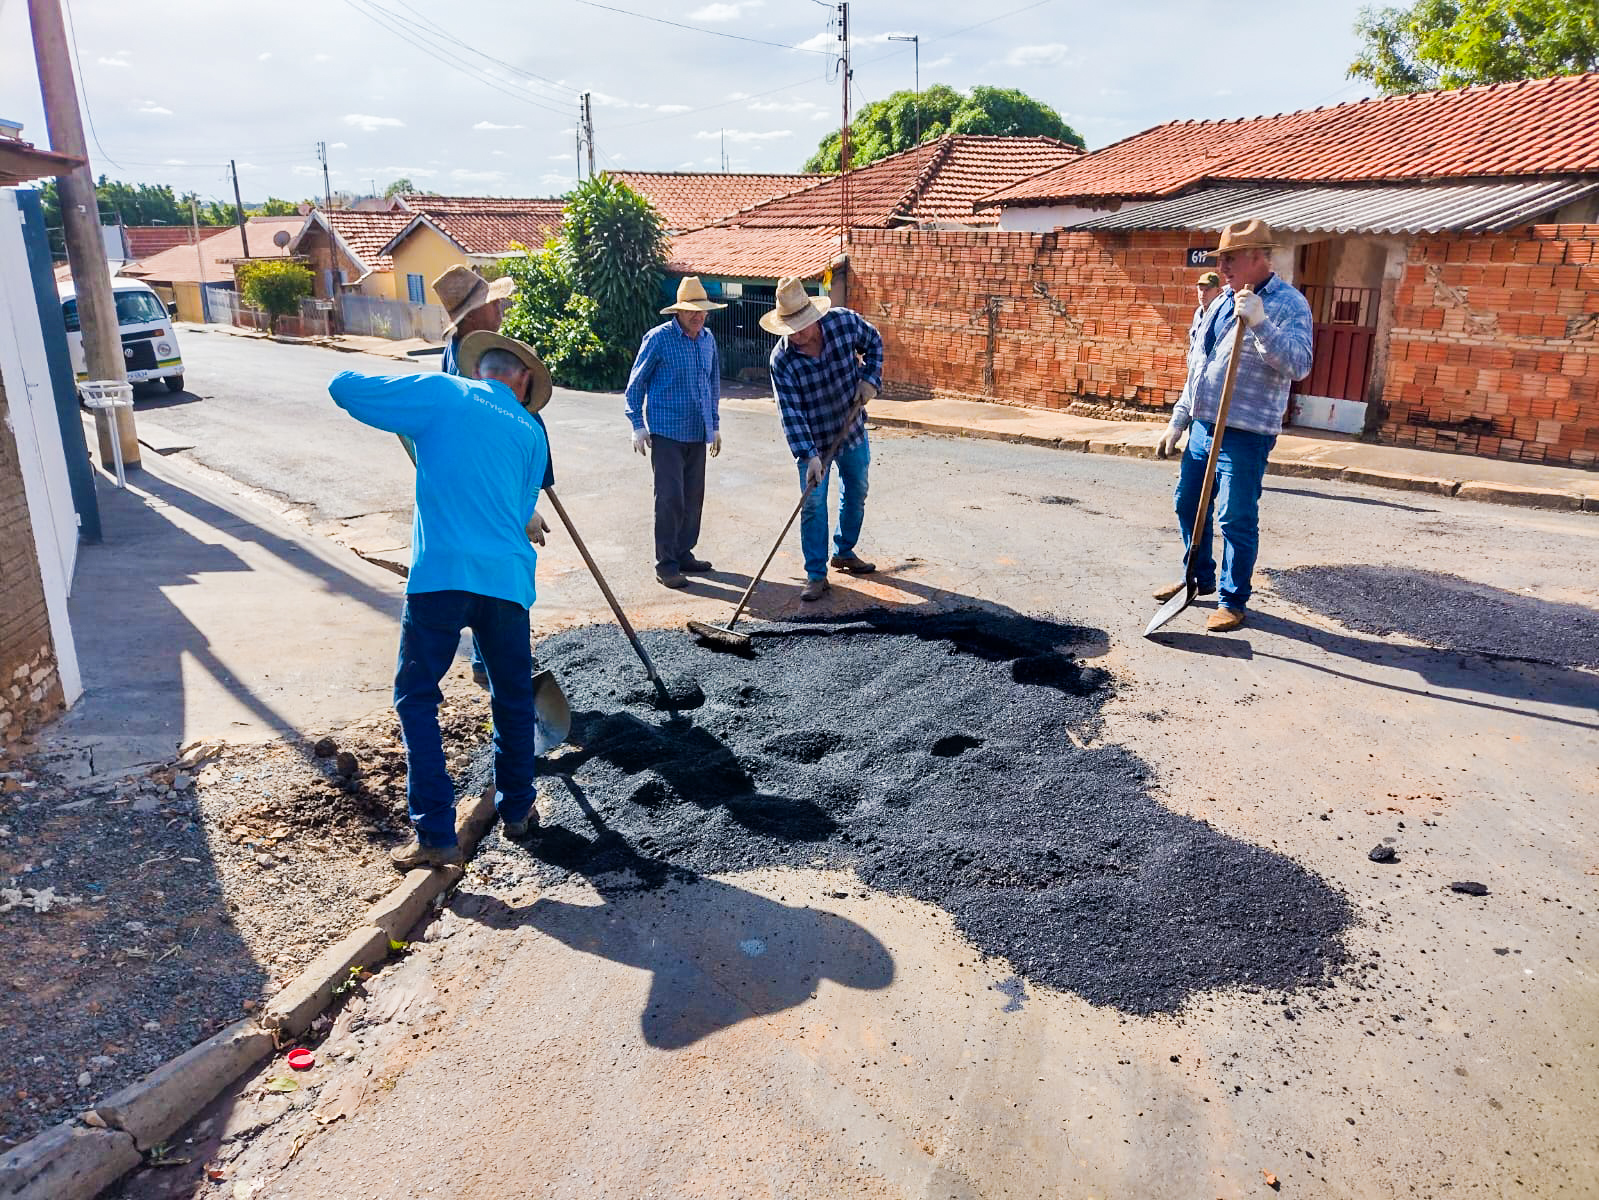 Funcionários da prefeitura conduzem ação para recuperação do asfalto danificado. Foto: Thomas Volpato Moutropoulos / Prefeitura Municipal de Urupês